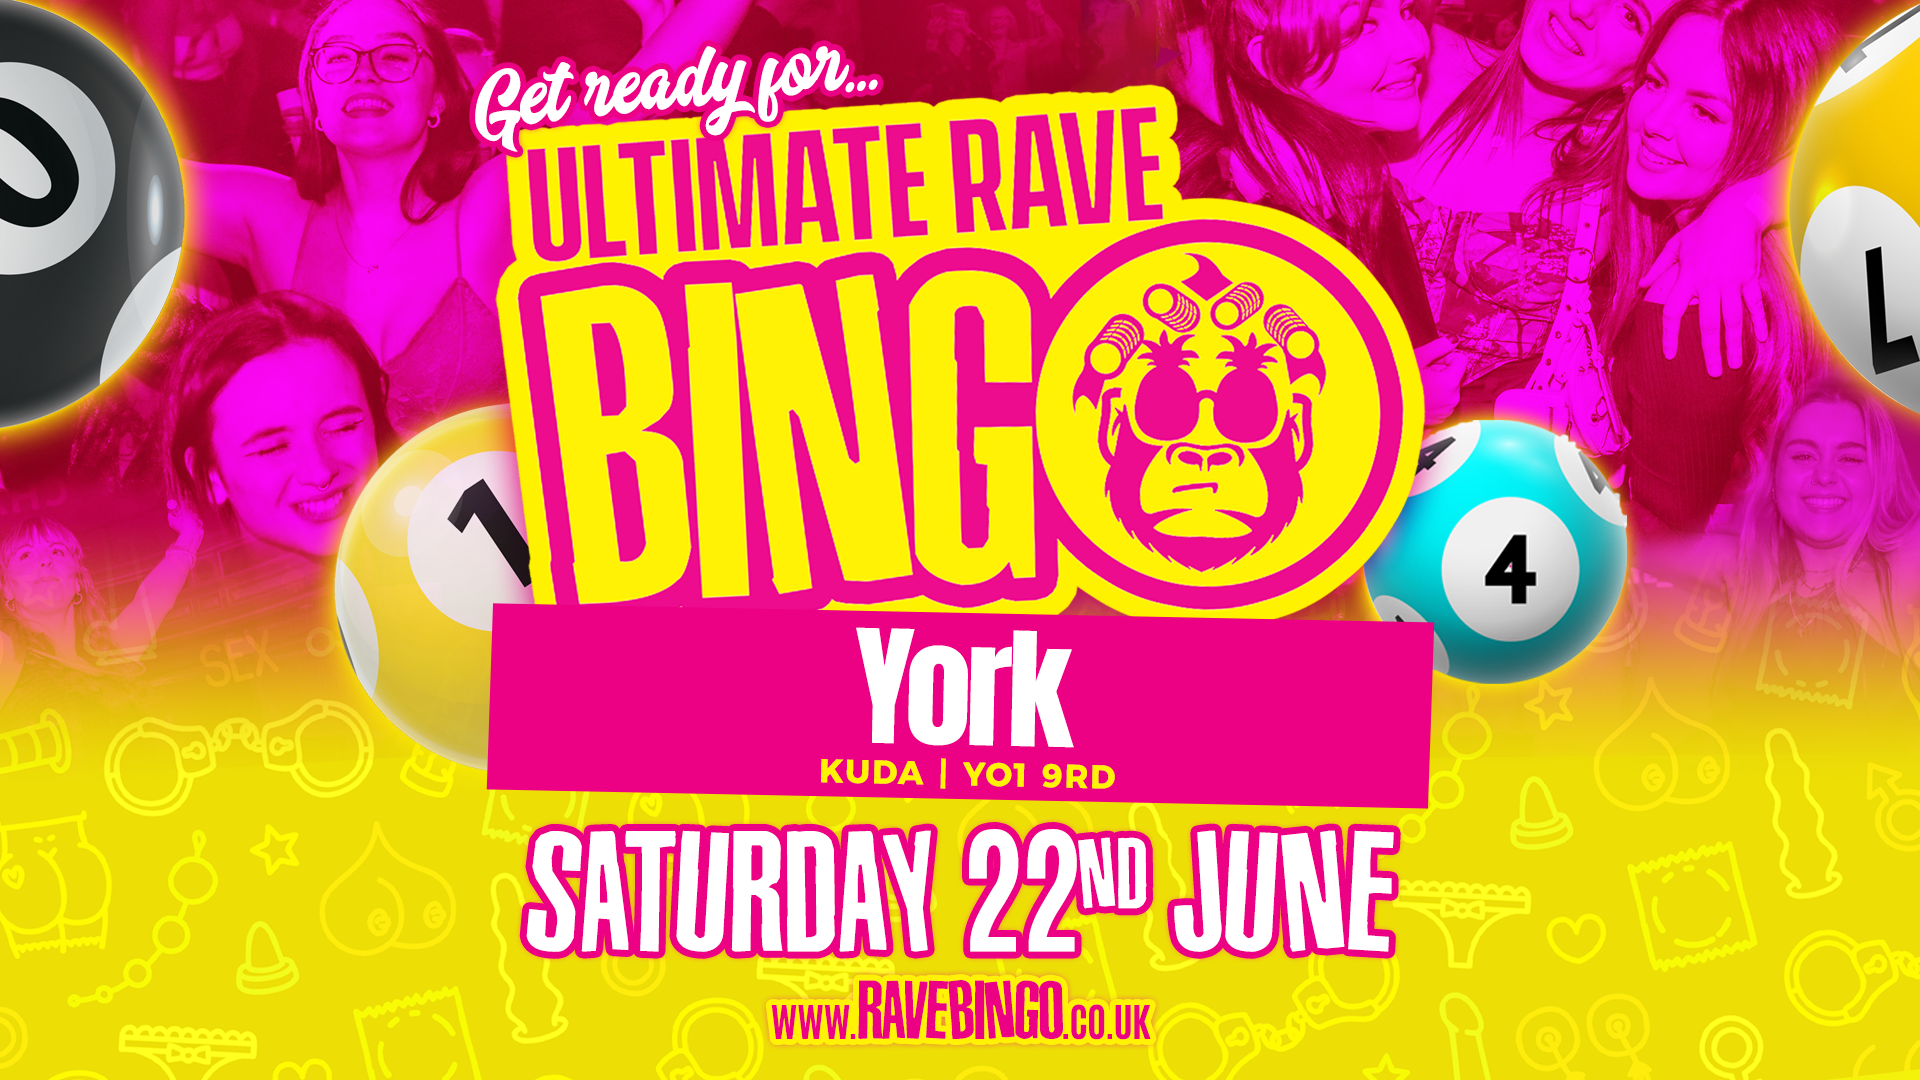 Ultimate Rave Bingo // York // Saturday 22nd June